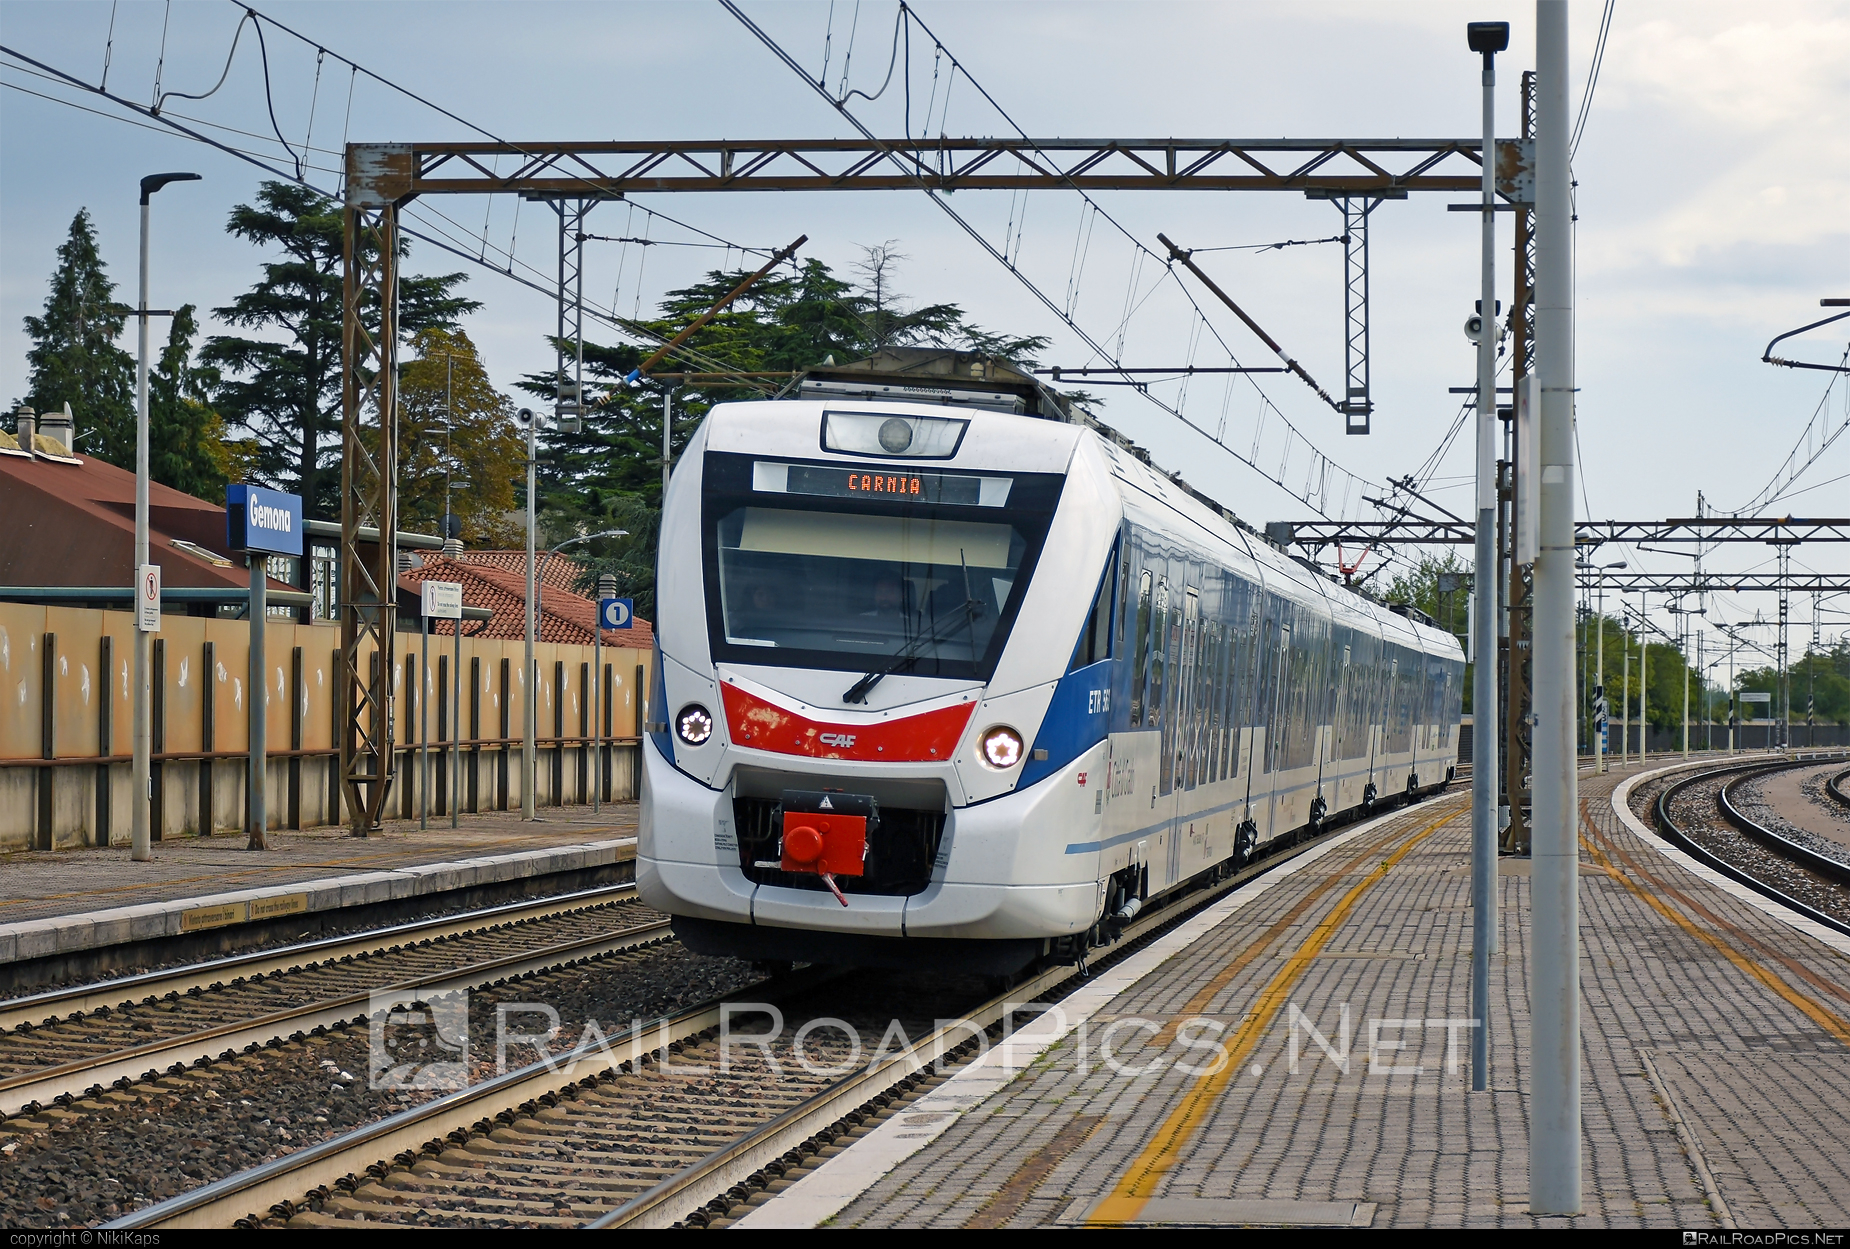 CAF Civity - 563 508-2 operated by Trenitalia S.p.A. #ConstruccionesYAuxiliarDeFerrocarriles #caf #cafCivity #civity #ferroviedellostato #fs #fsitaliane #trenitalia #trenitaliaspa